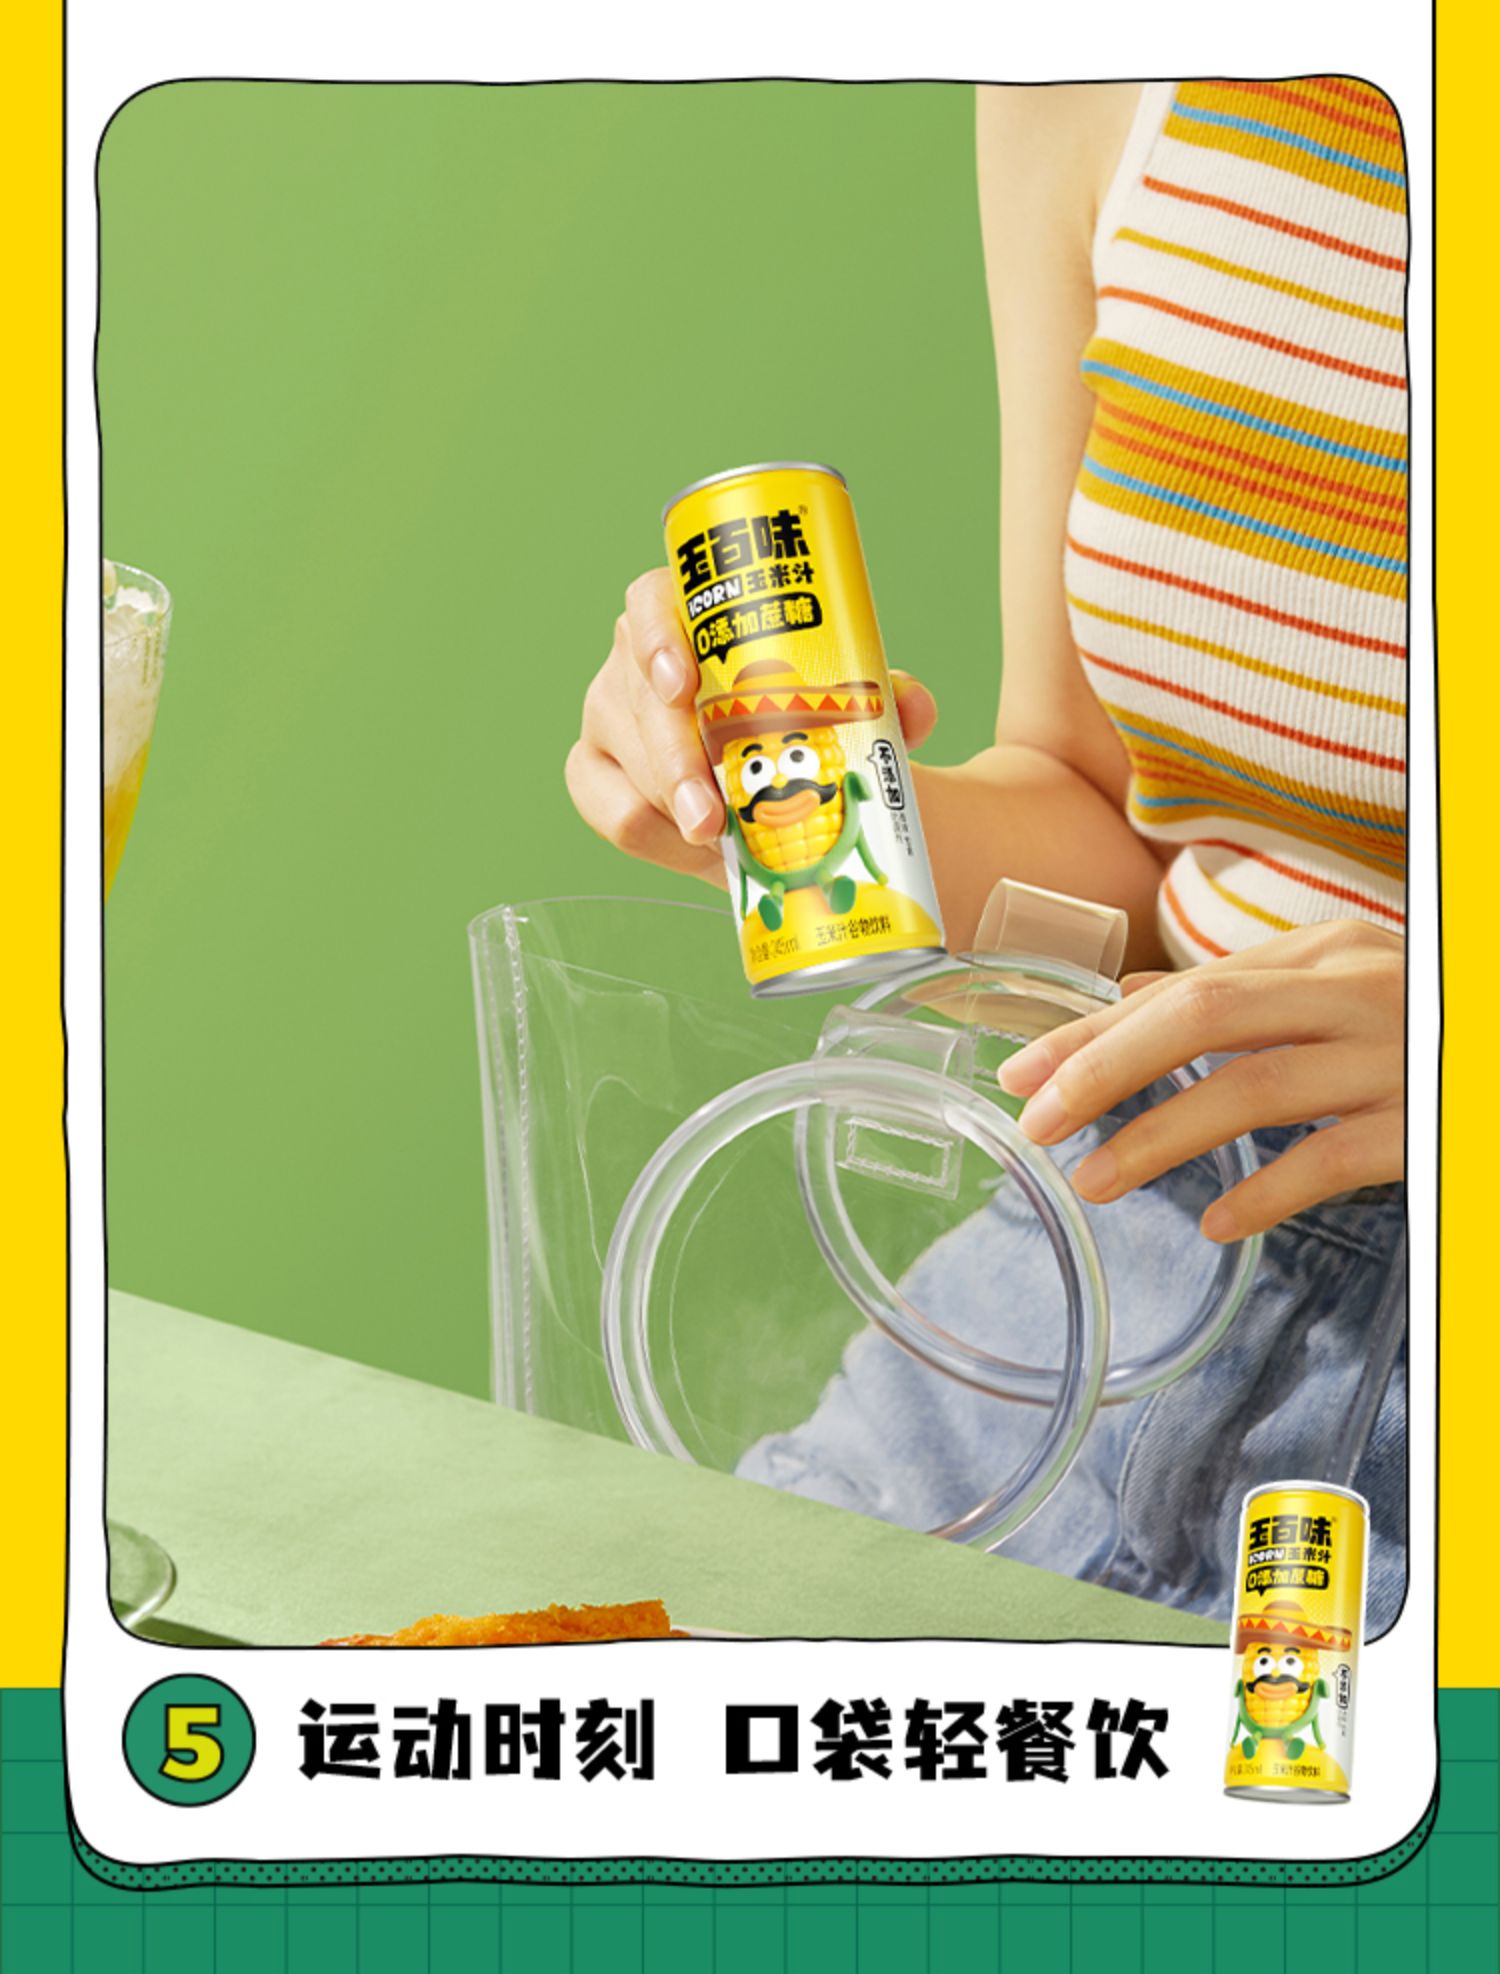 【0添加】玉百味玉米汁245ml*8